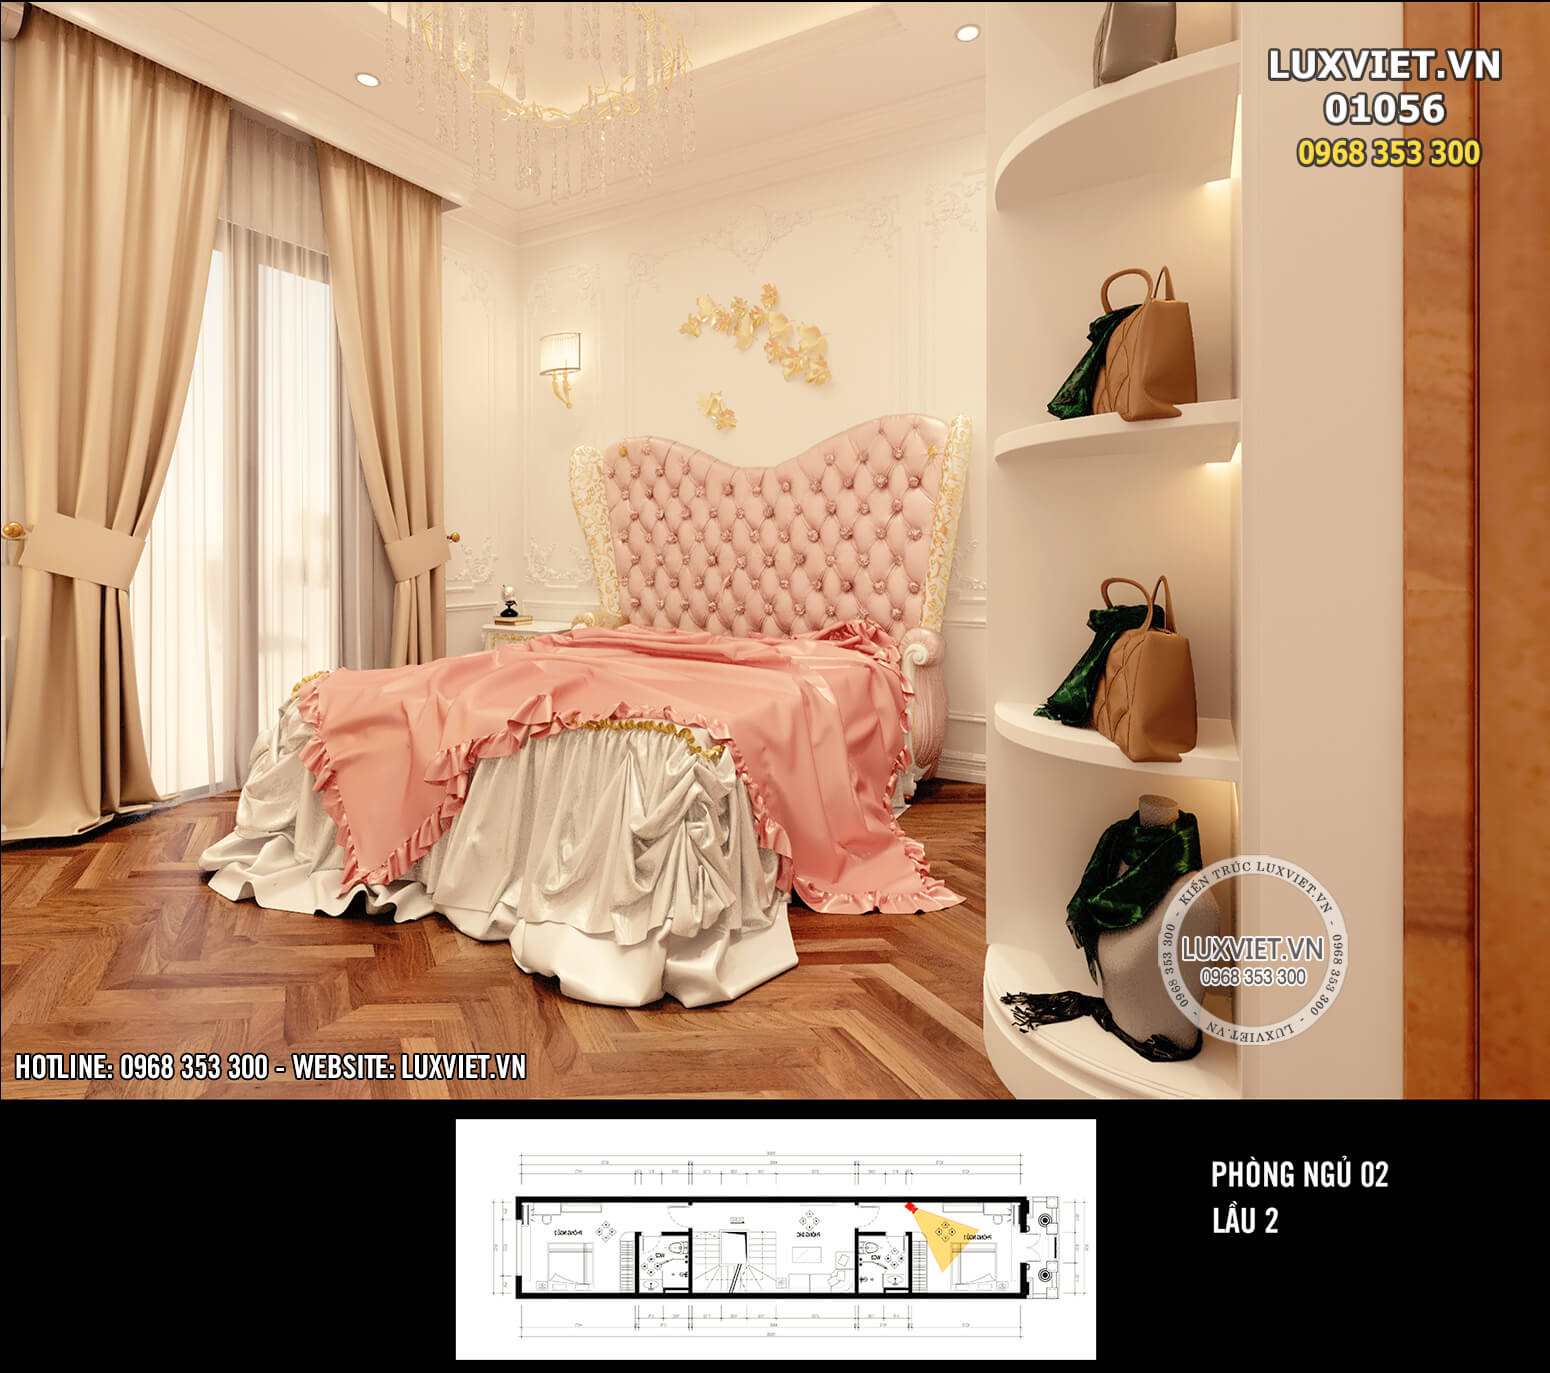 Hình ảnh: Thiết kế phòng ngủ ấm áp và thư giãn - LV 01056